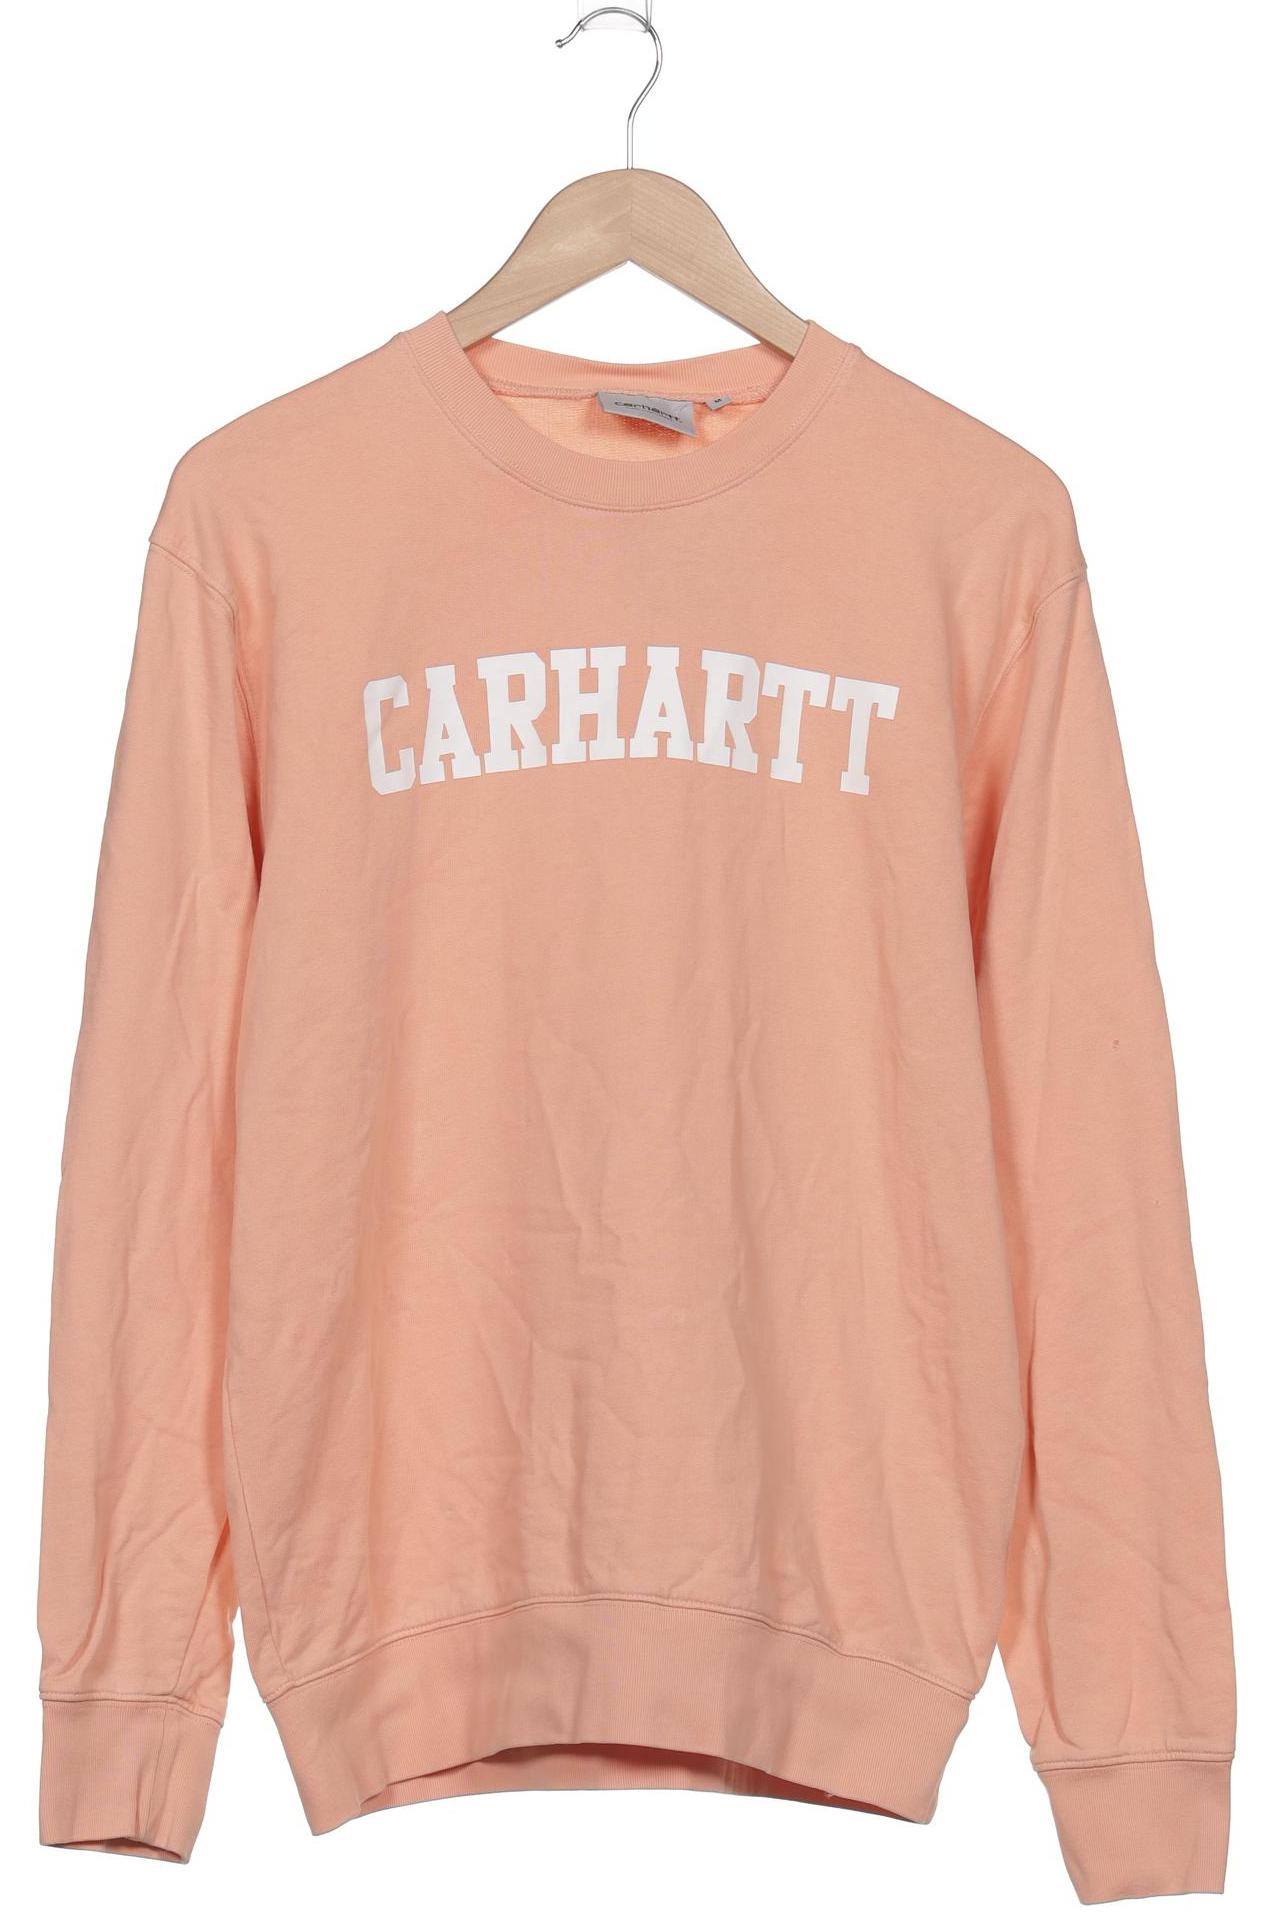 Carhartt Damen Sweatshirt, orange, Gr. 38 von Carhartt